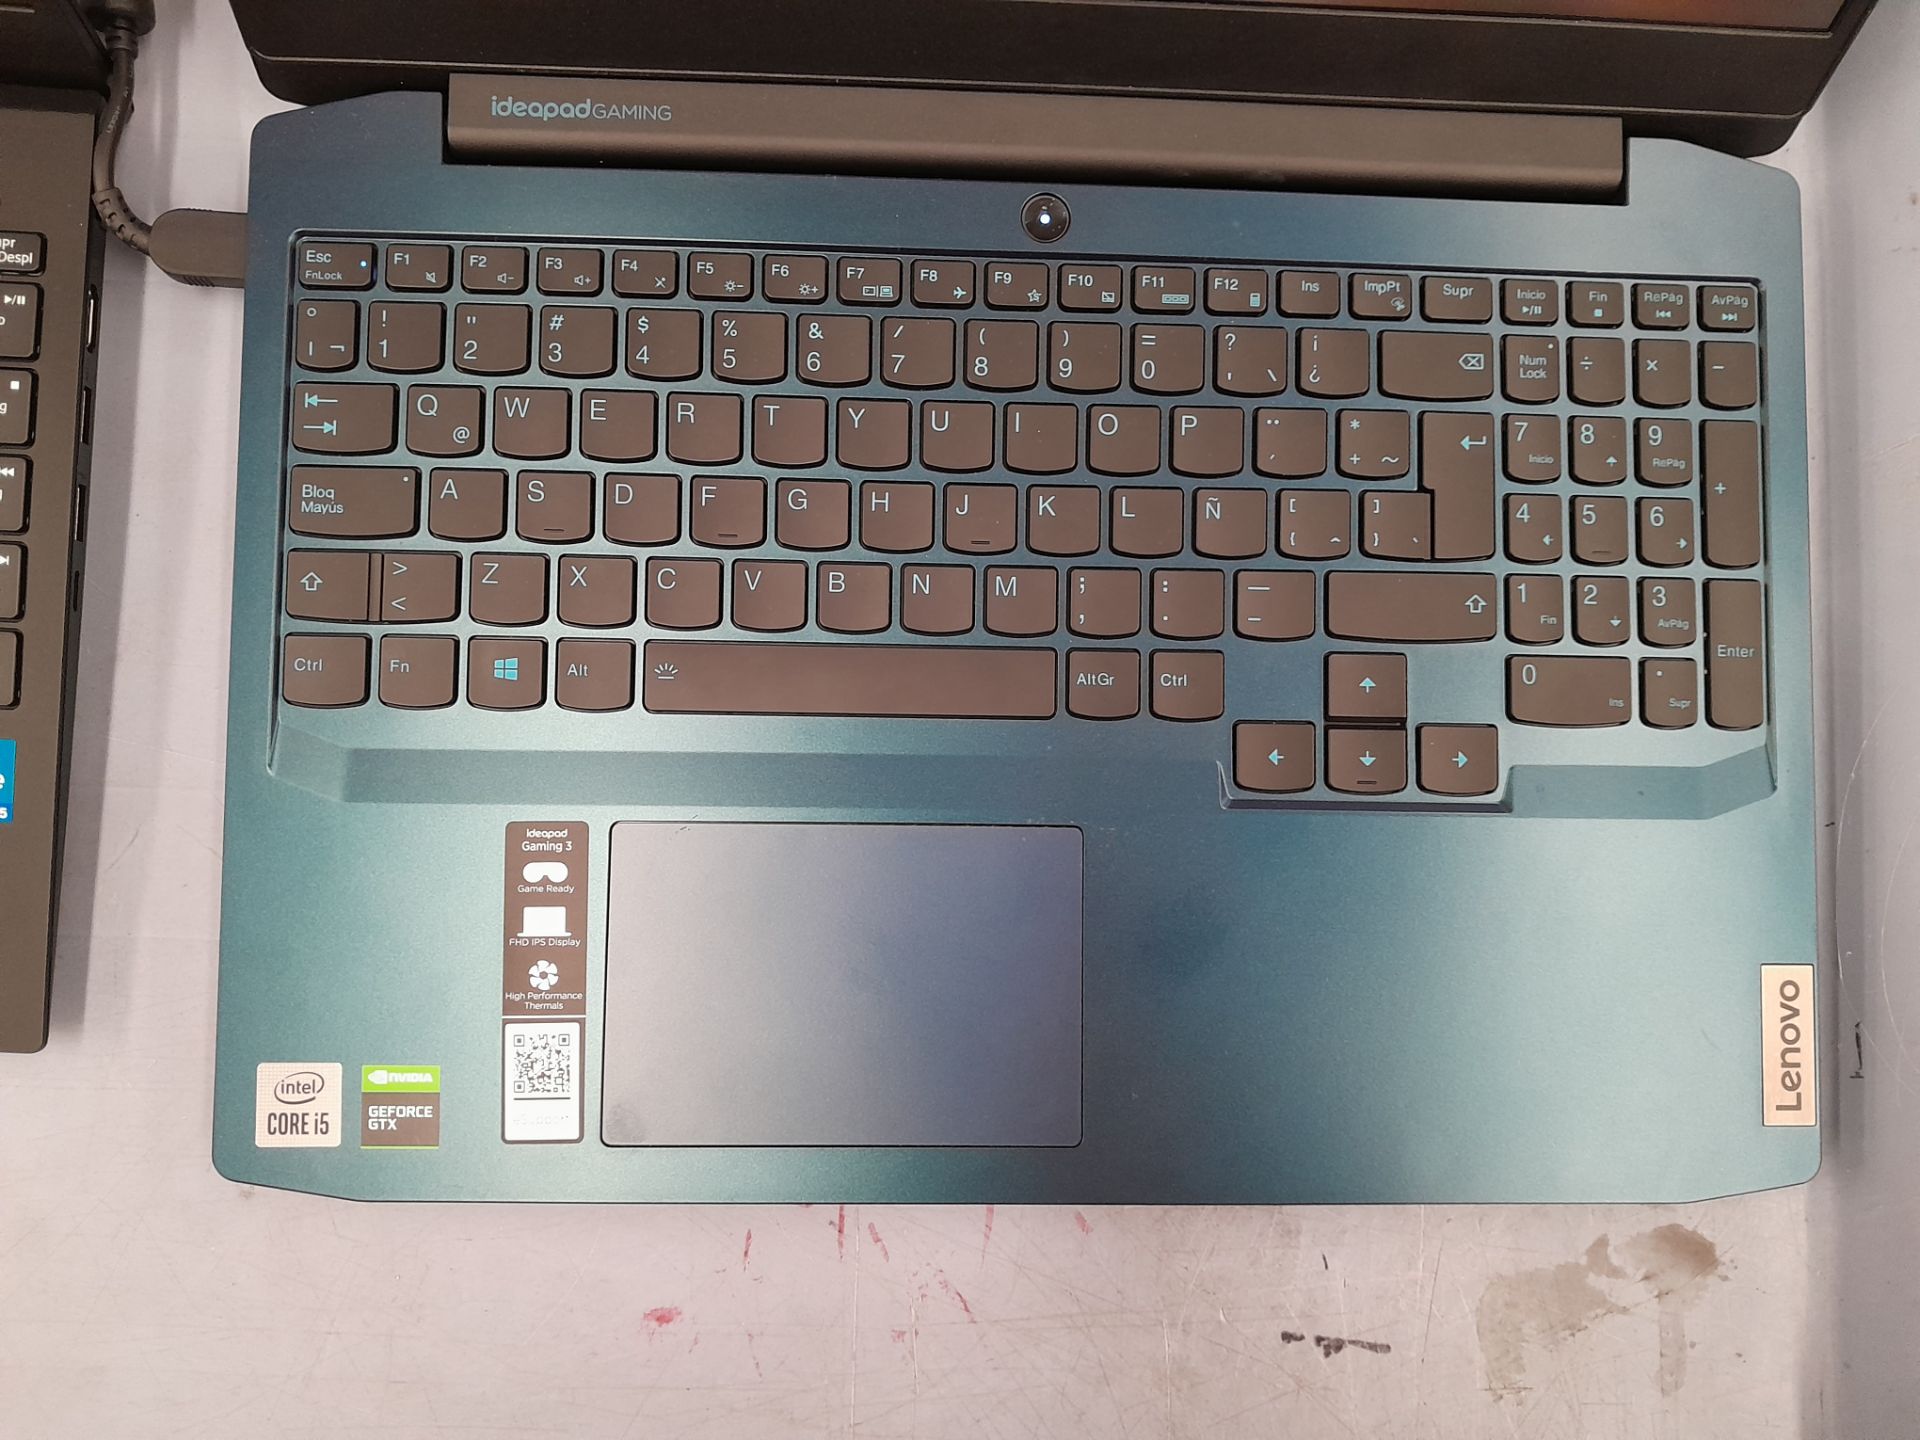 Lote de 2 laptops contiene: 1 Laptop Marca LENOVO, Modelo 81Y4, RAM 8GB, almacenamiento 1 TB, Proce - Image 4 of 13